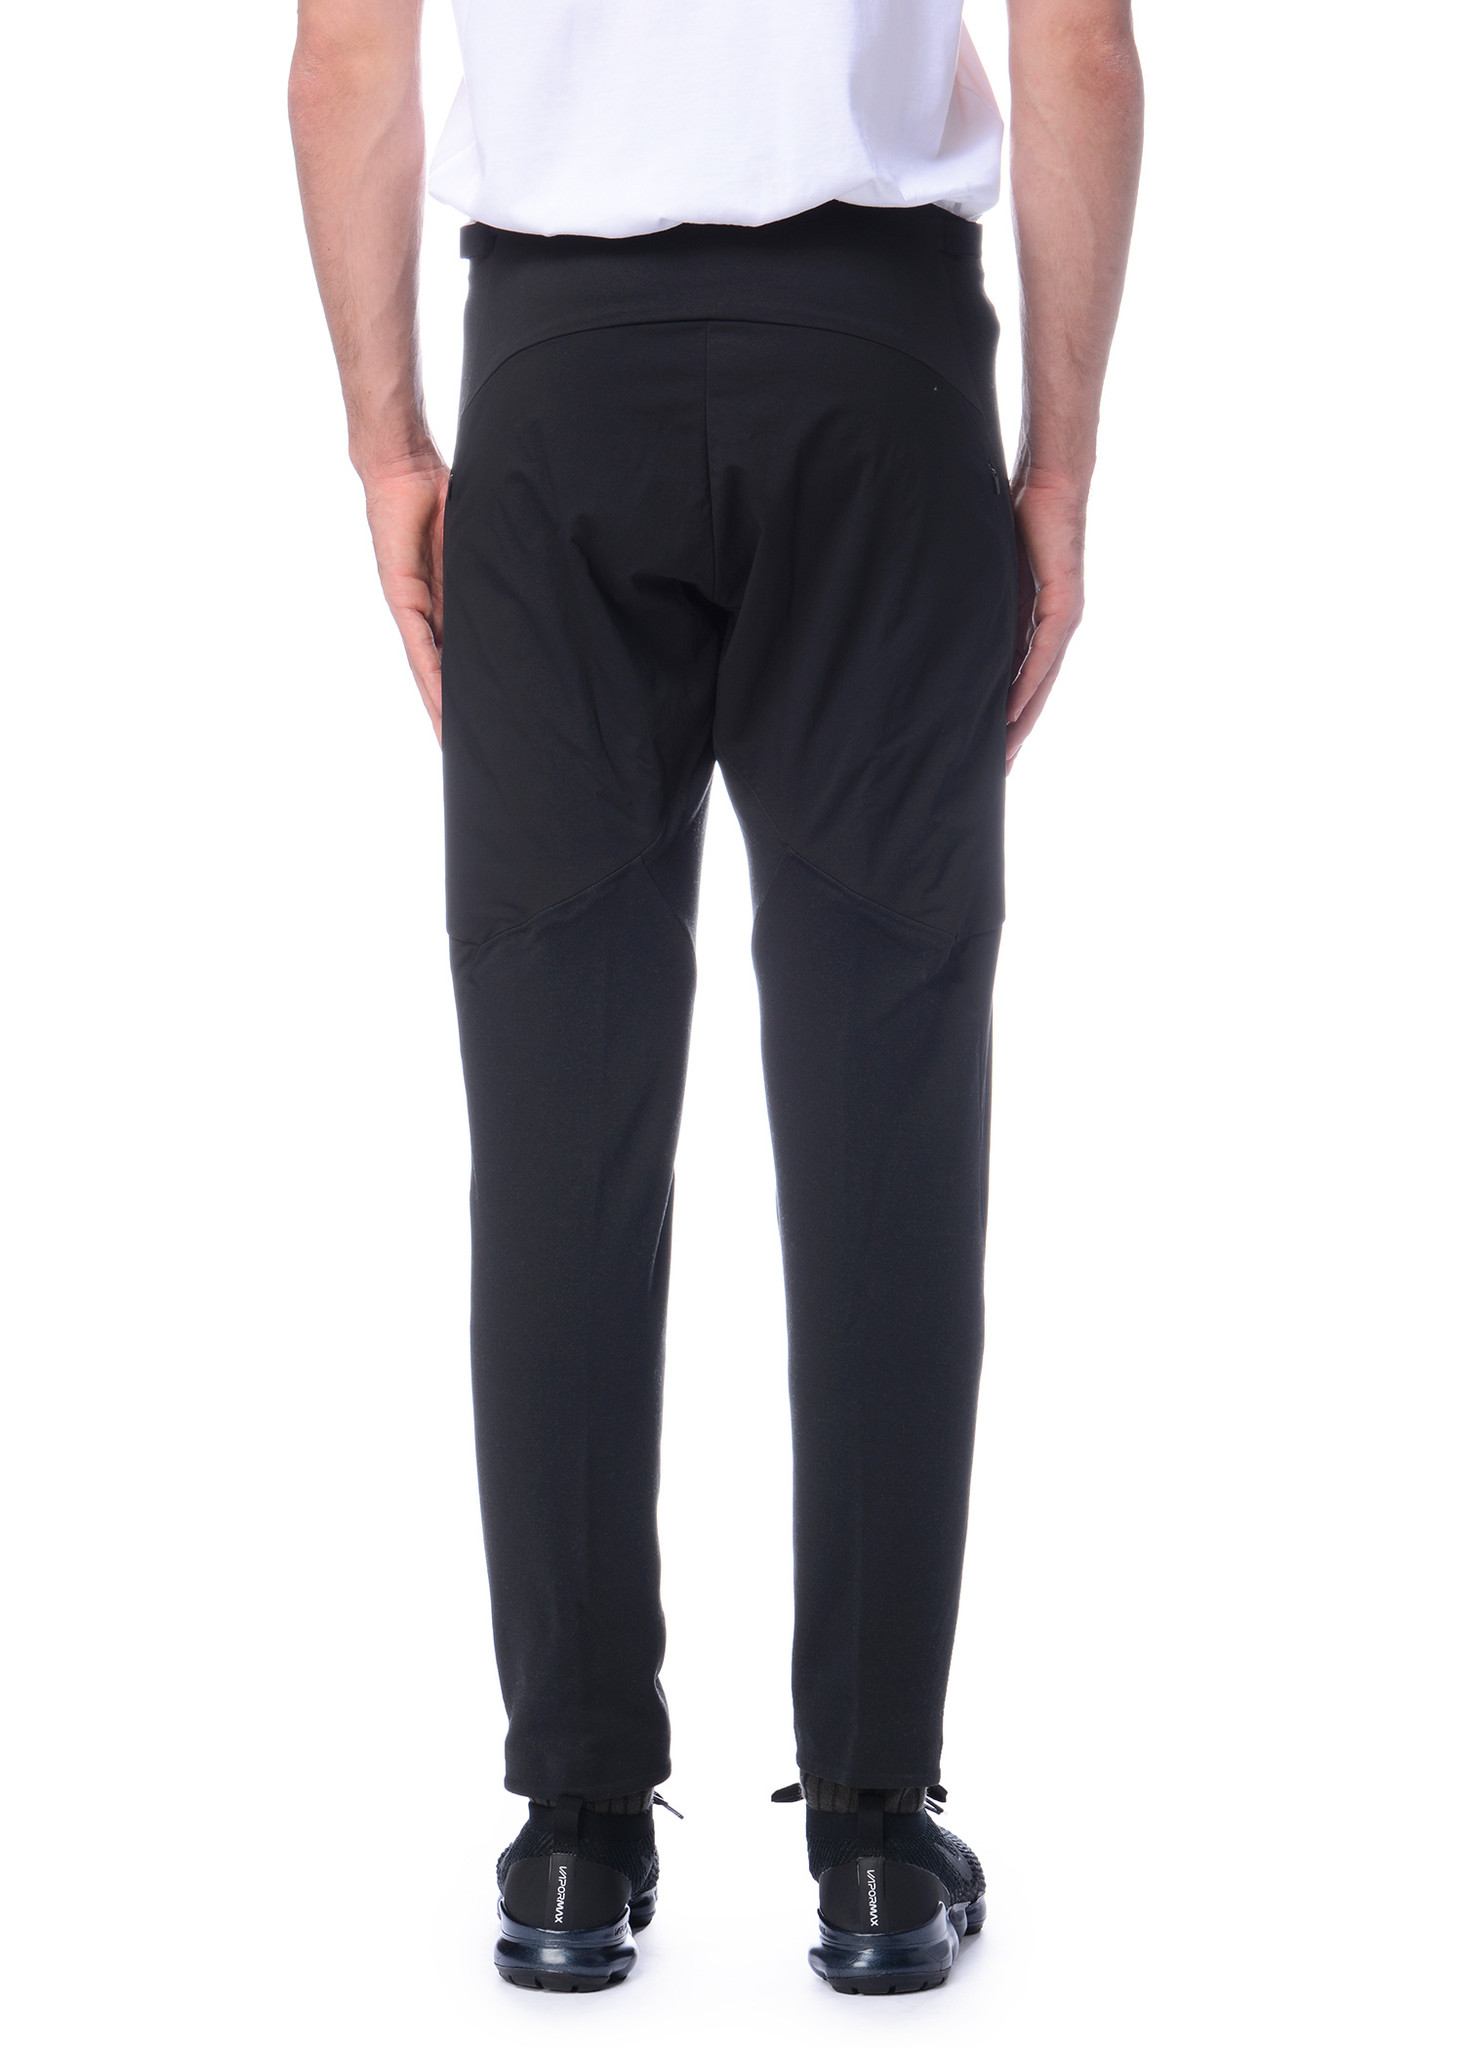 Veilance: Black DYADIC Comp Pants | Men's Designer Clothes 